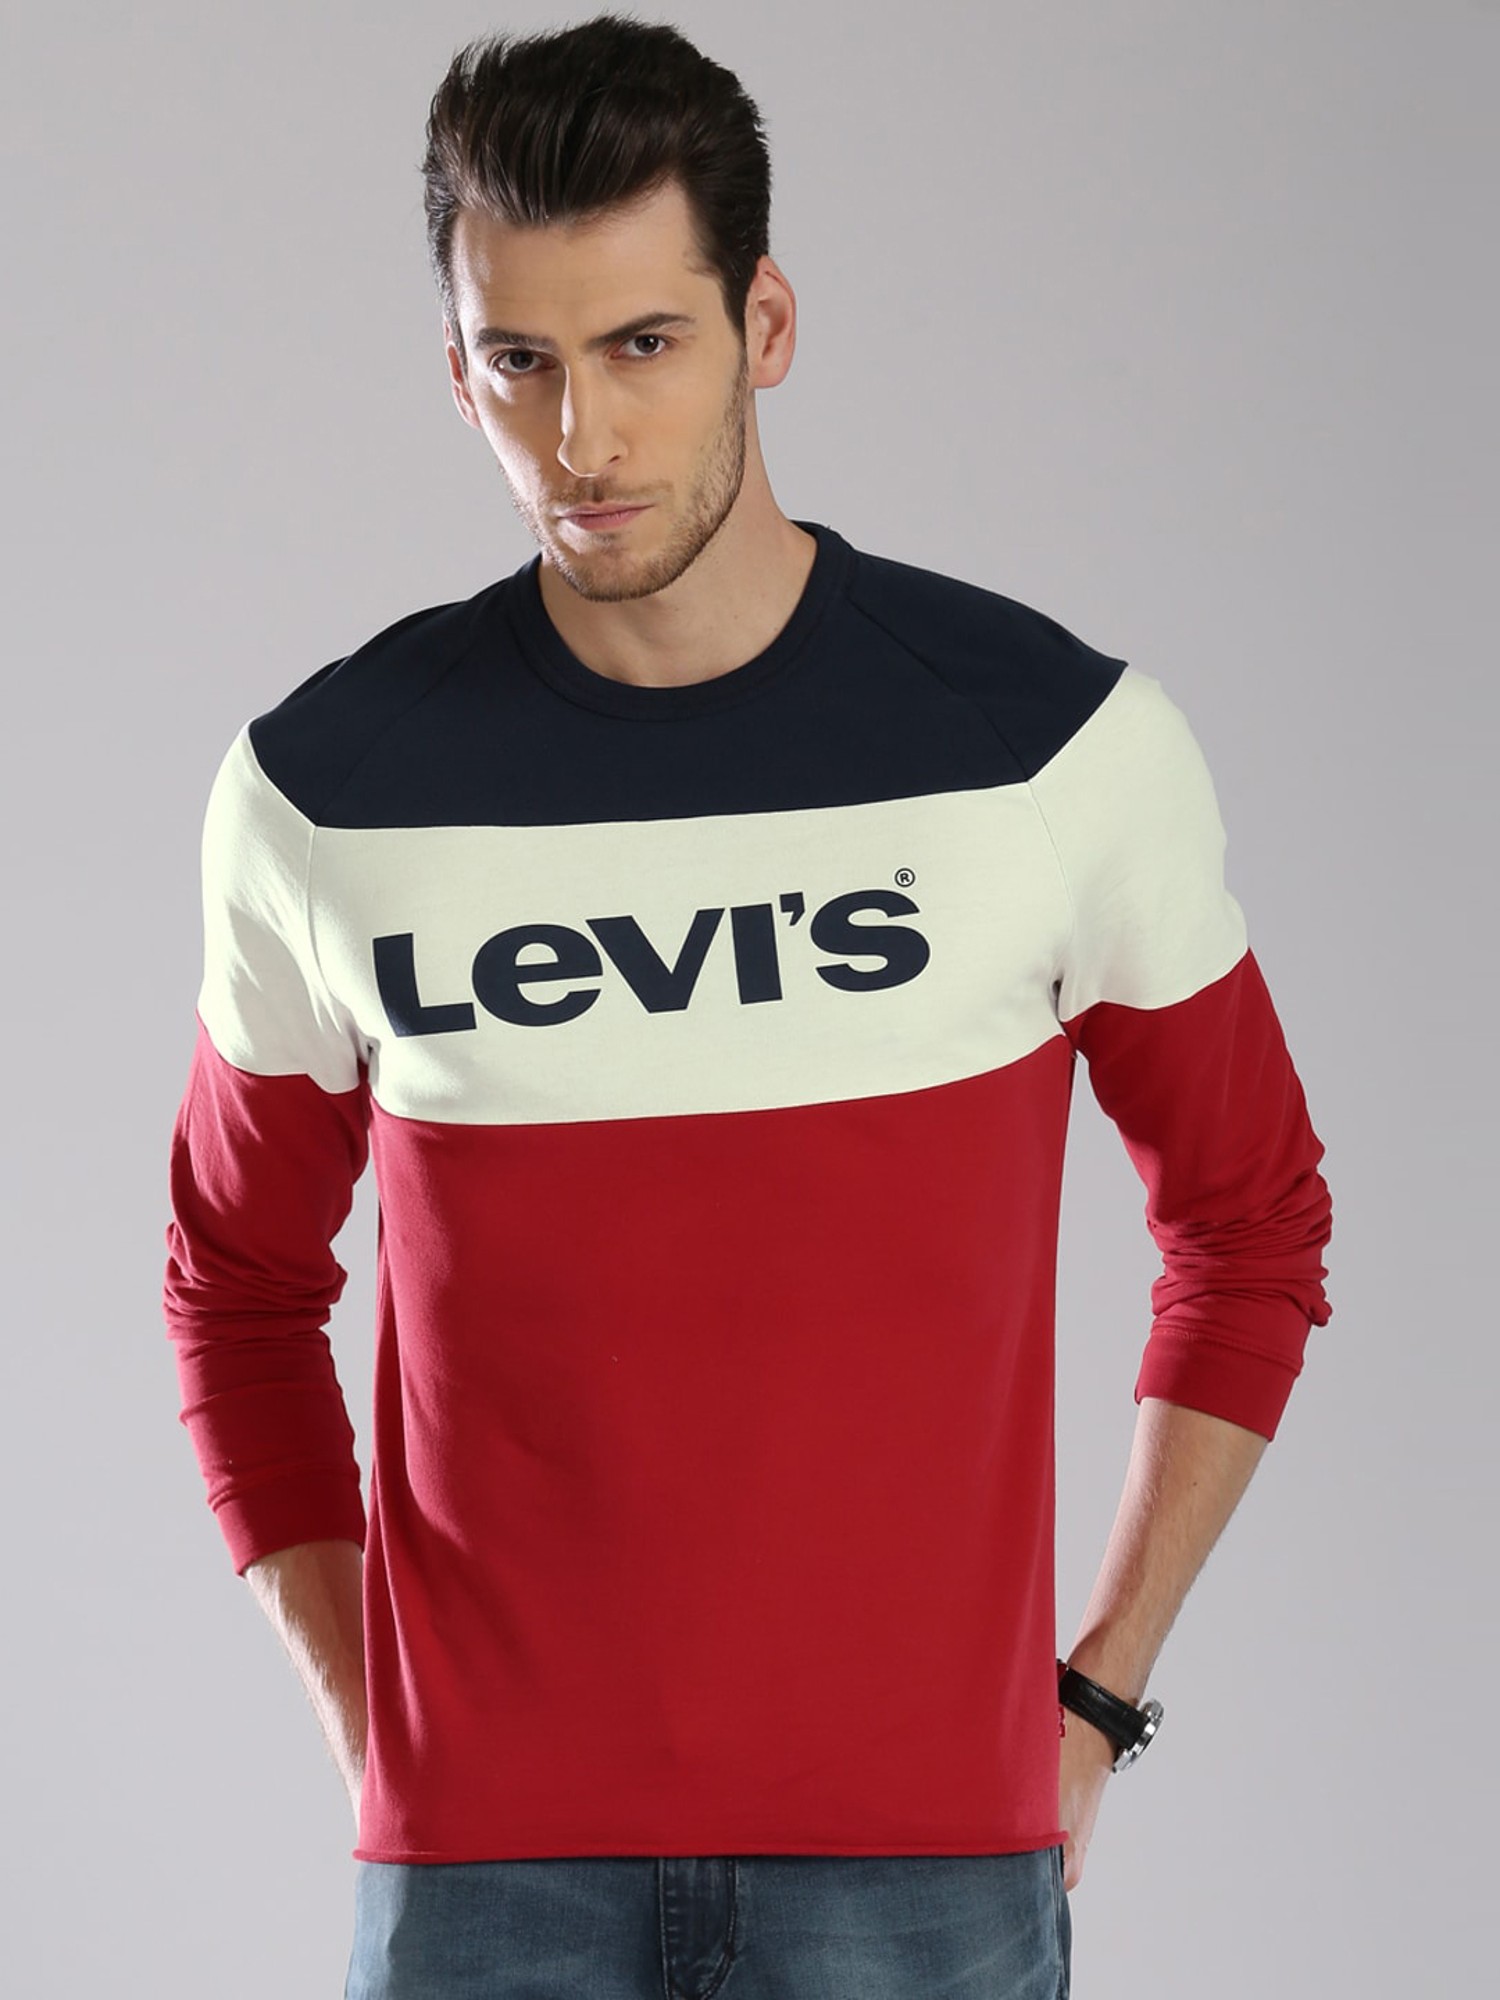 Buy Levi'S Red & White Cotton T-Shirt for Mens Online @ Tata CLiQ